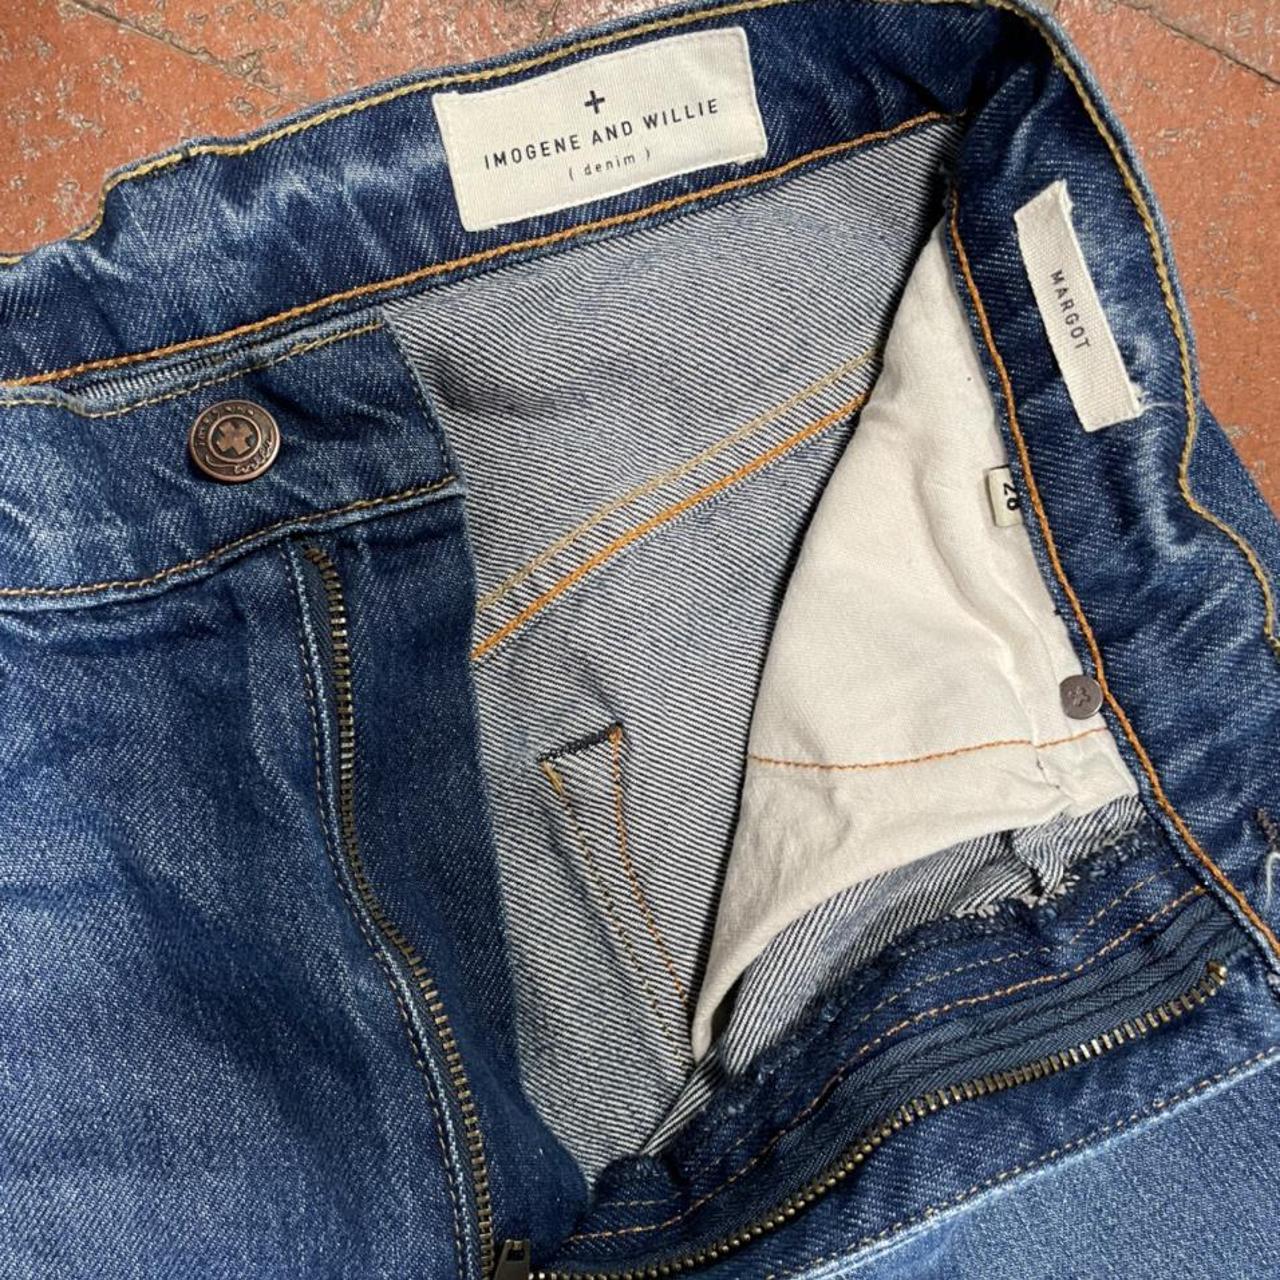 IMOGENE AND WILLIE Margot Premium denim jeans. 12”... - Depop